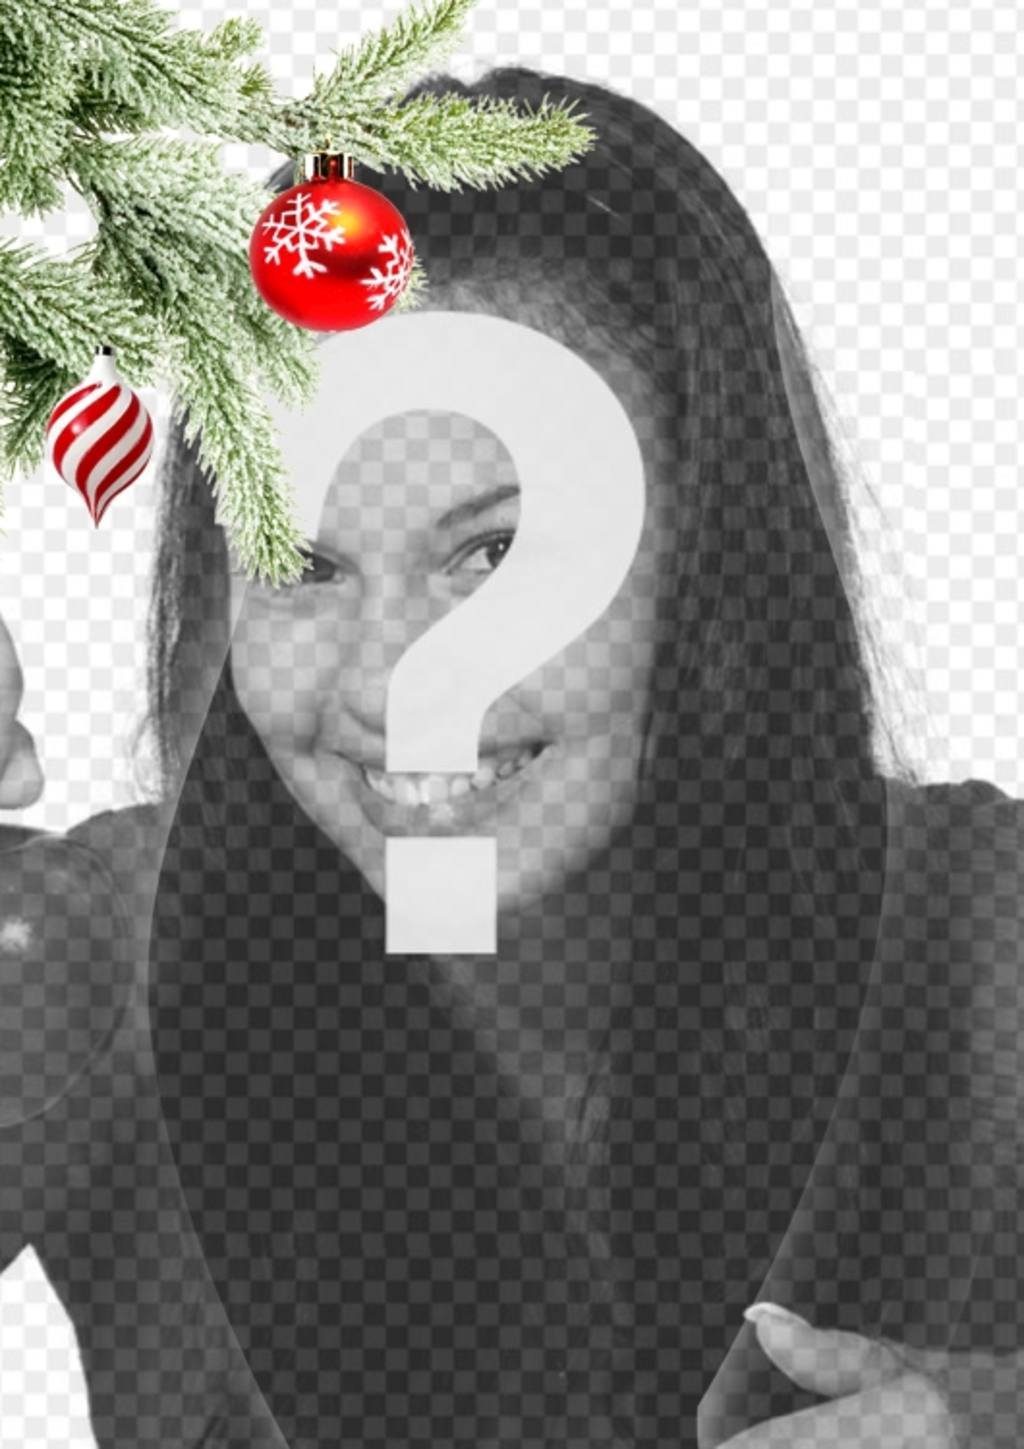 Carte postale / cadre photo de Noël où vous mettez une image. Effet de courbes améliorées sur fond noir. Au premier plan on voit une branche d'arbre de Noël accroché avec deux balles, une dans la forme de la crème glacée ou une tornade, est spirales blanches et rouges,..